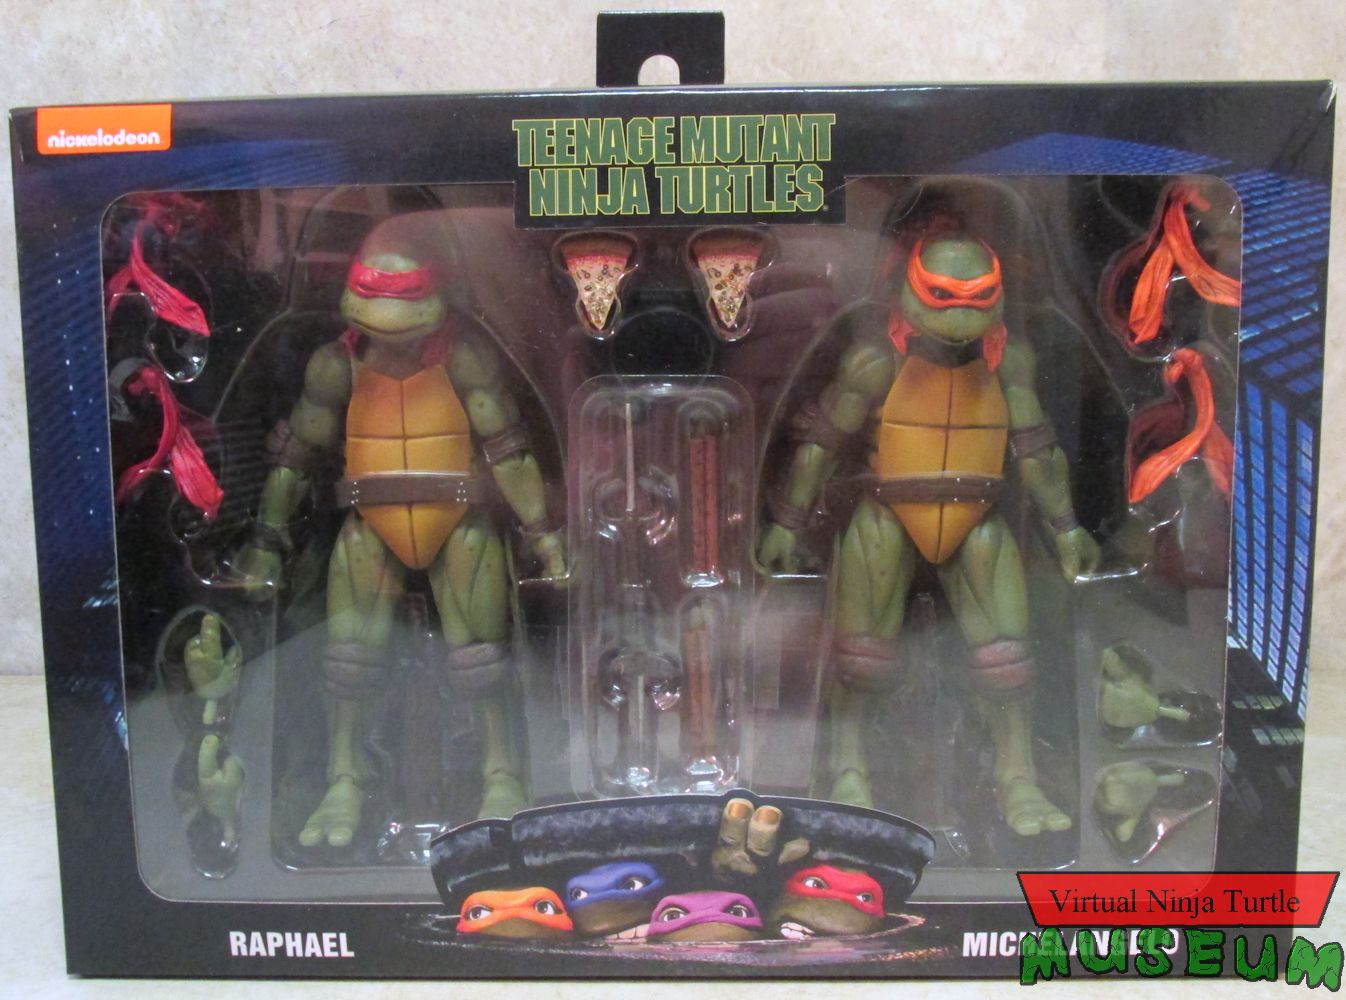 Michelangelo & Raphael box front